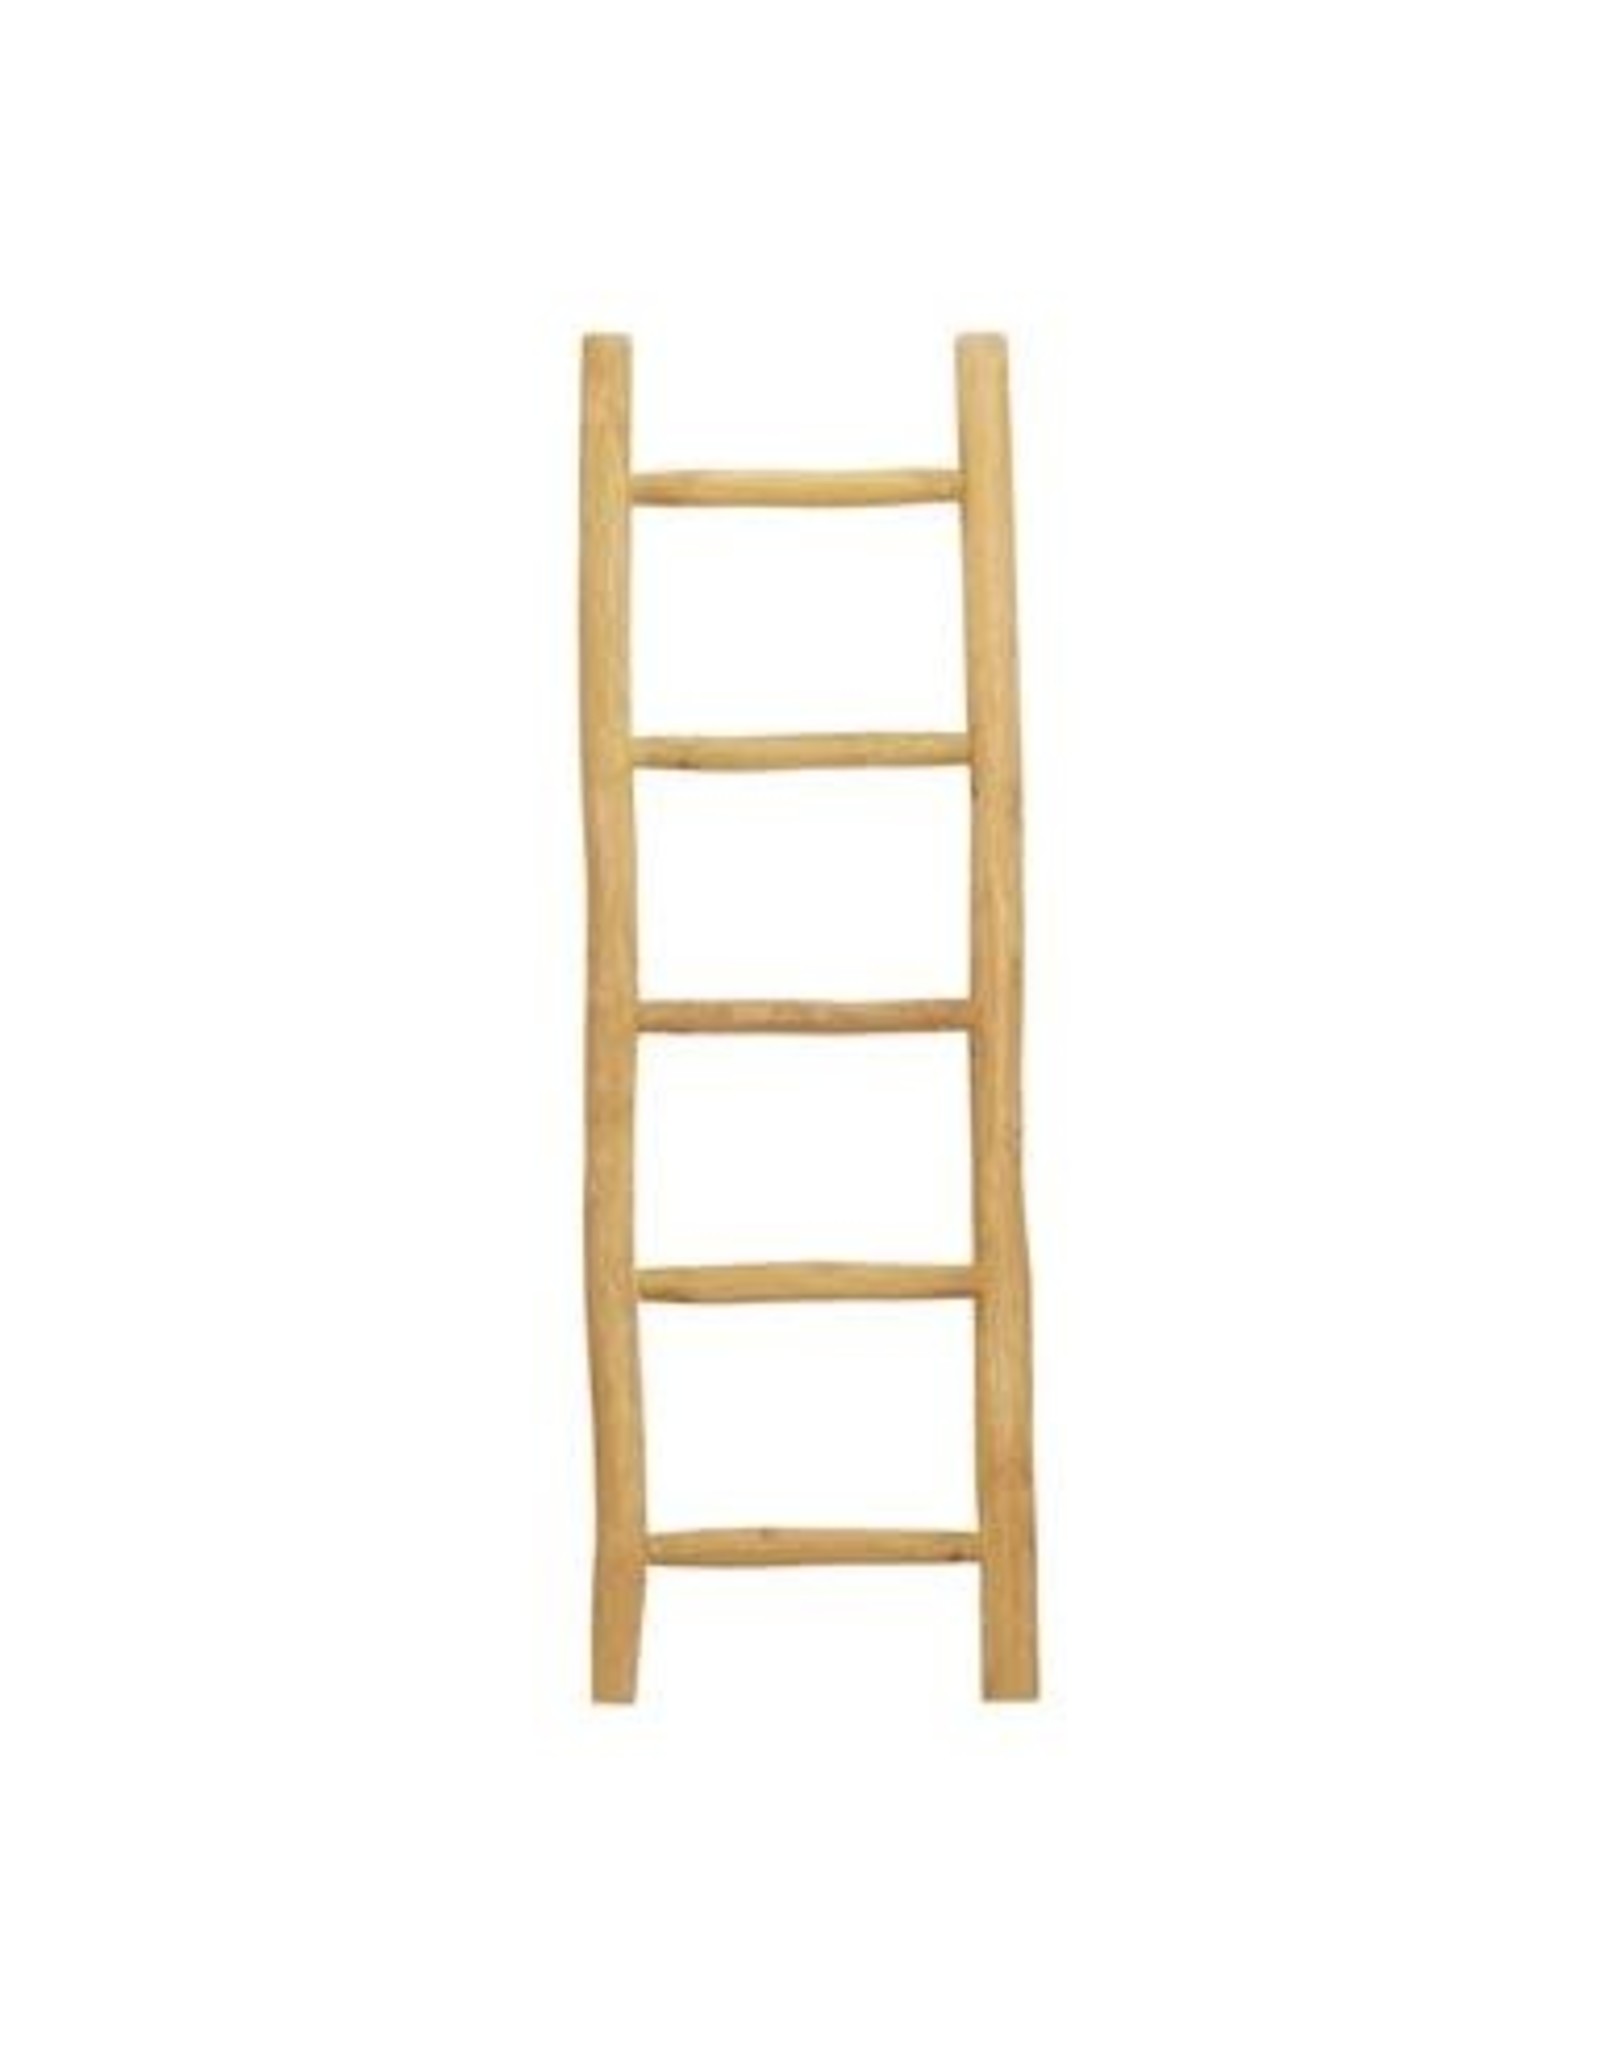 36927 Teak Ladder18" x 59H